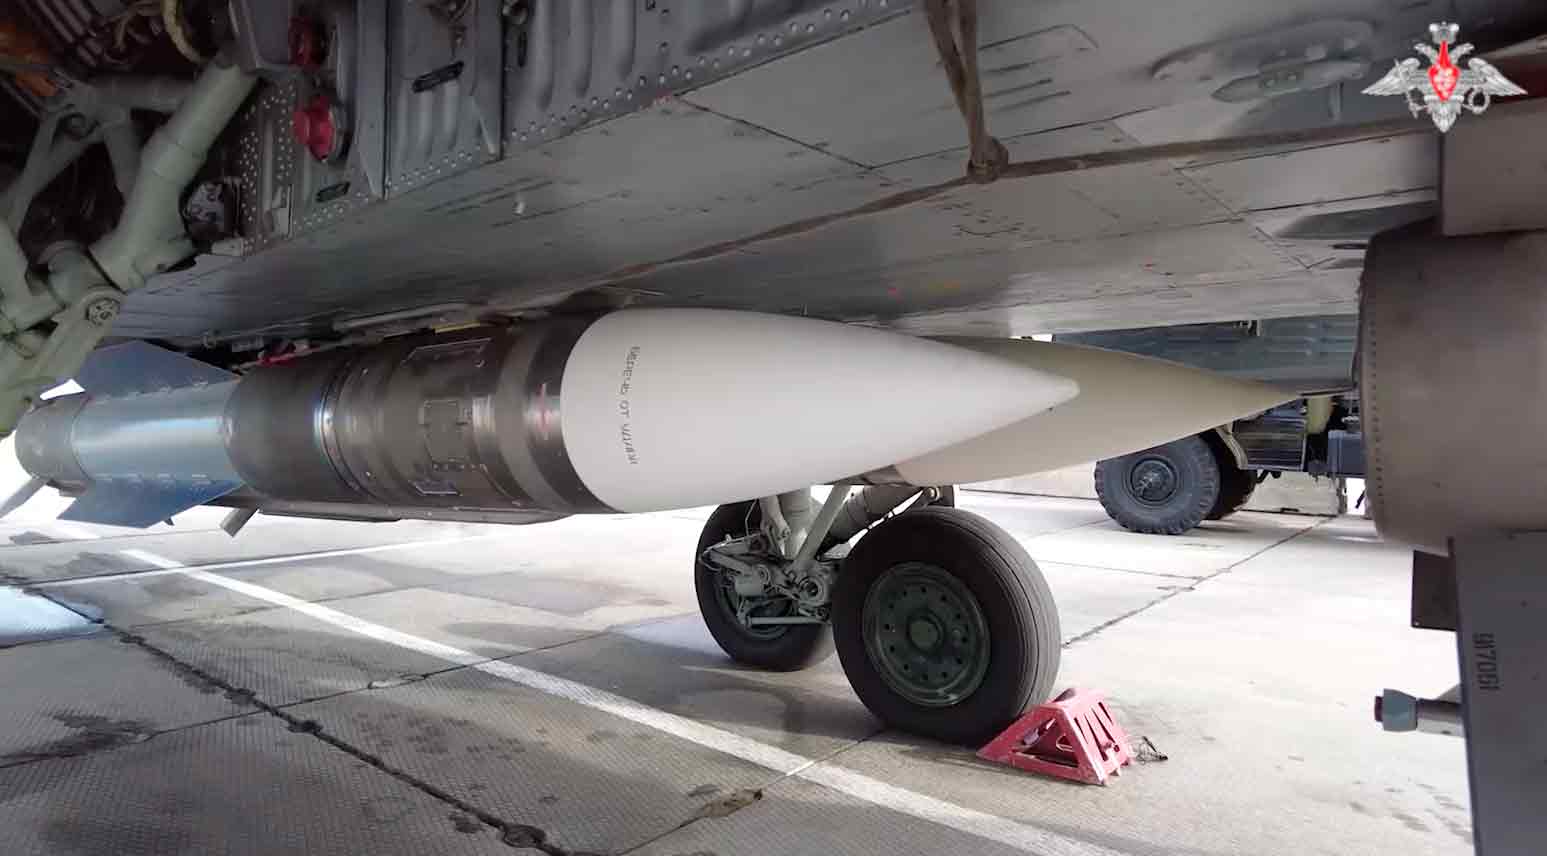 Vídeo mostra o trabalhao patrulhamento aéreo do caça MiG-31 com antigos, mas poderosos, míssieis de longo alcance R-33. Foto e vídeo: Reprodução Telegram t.me/mod_russia